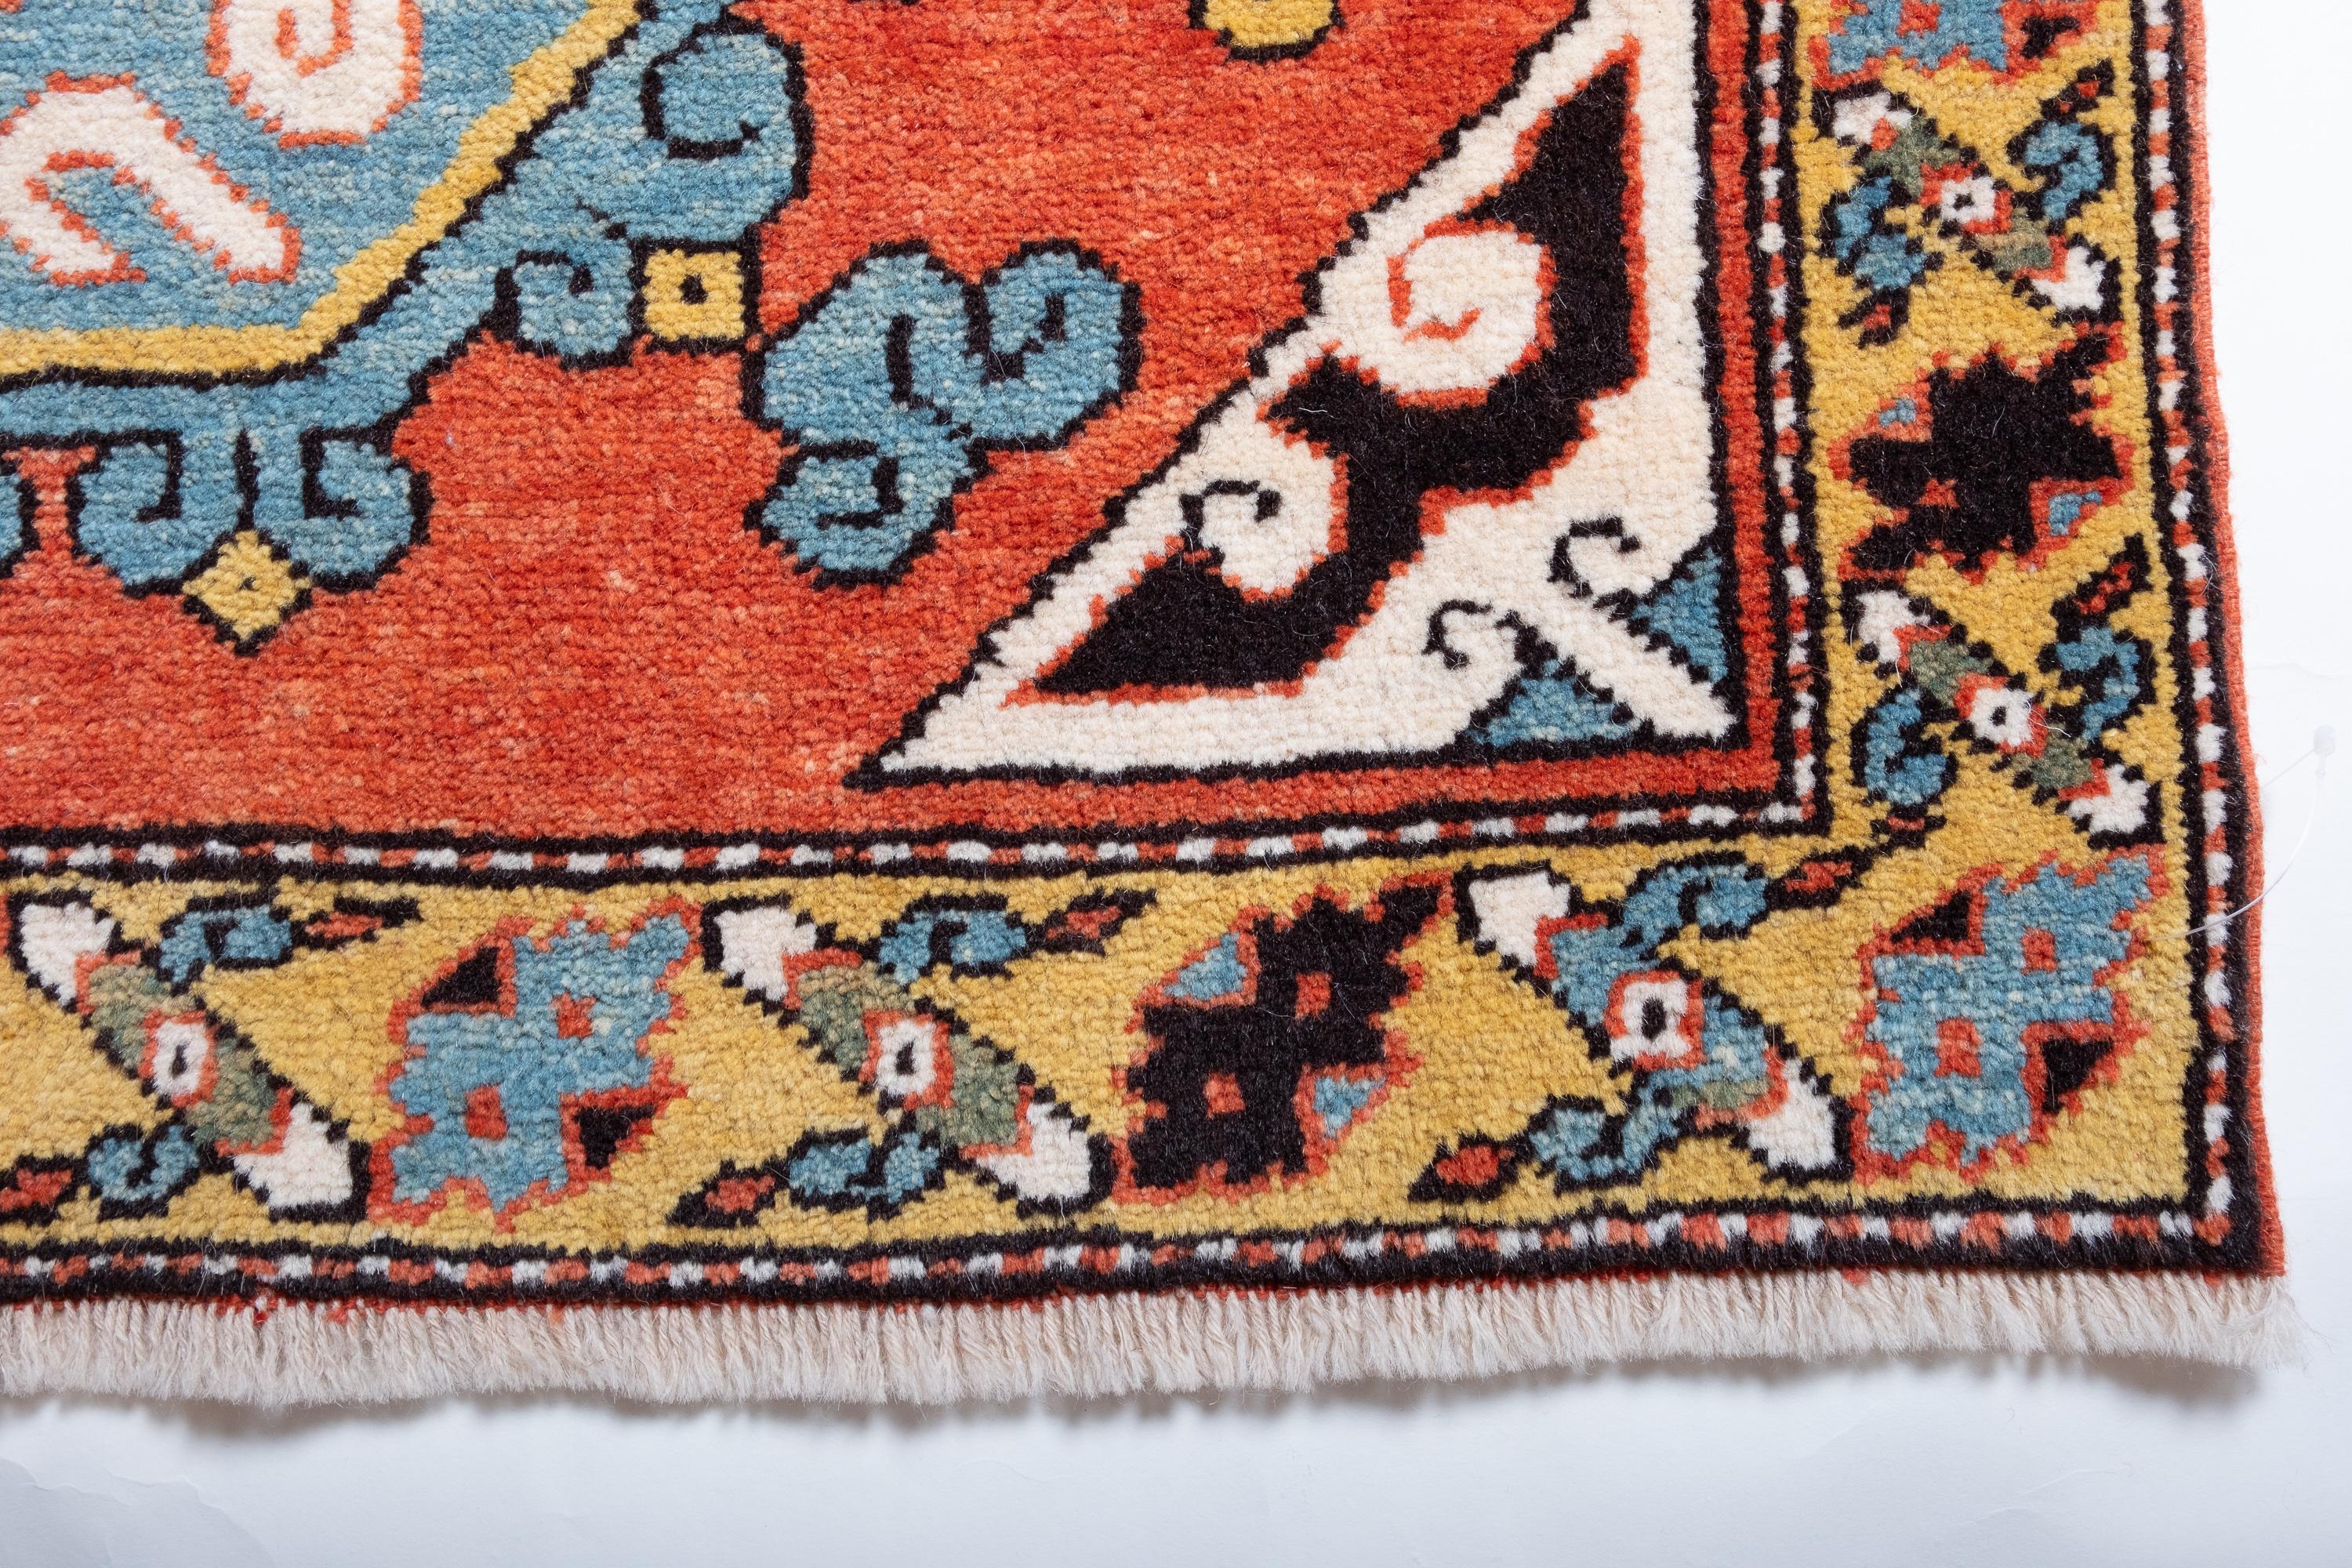 Die Quelle des Teppichs stammt aus dem Buch Orient Star - A Carpet Collection, E. Heinrich Kirchheim, Hali Publications Ltd, 1993 nr.161. Diese außergewöhnlich elegante und ungewöhnliche zentrale achteckige Figur wird von einem Teppich mit